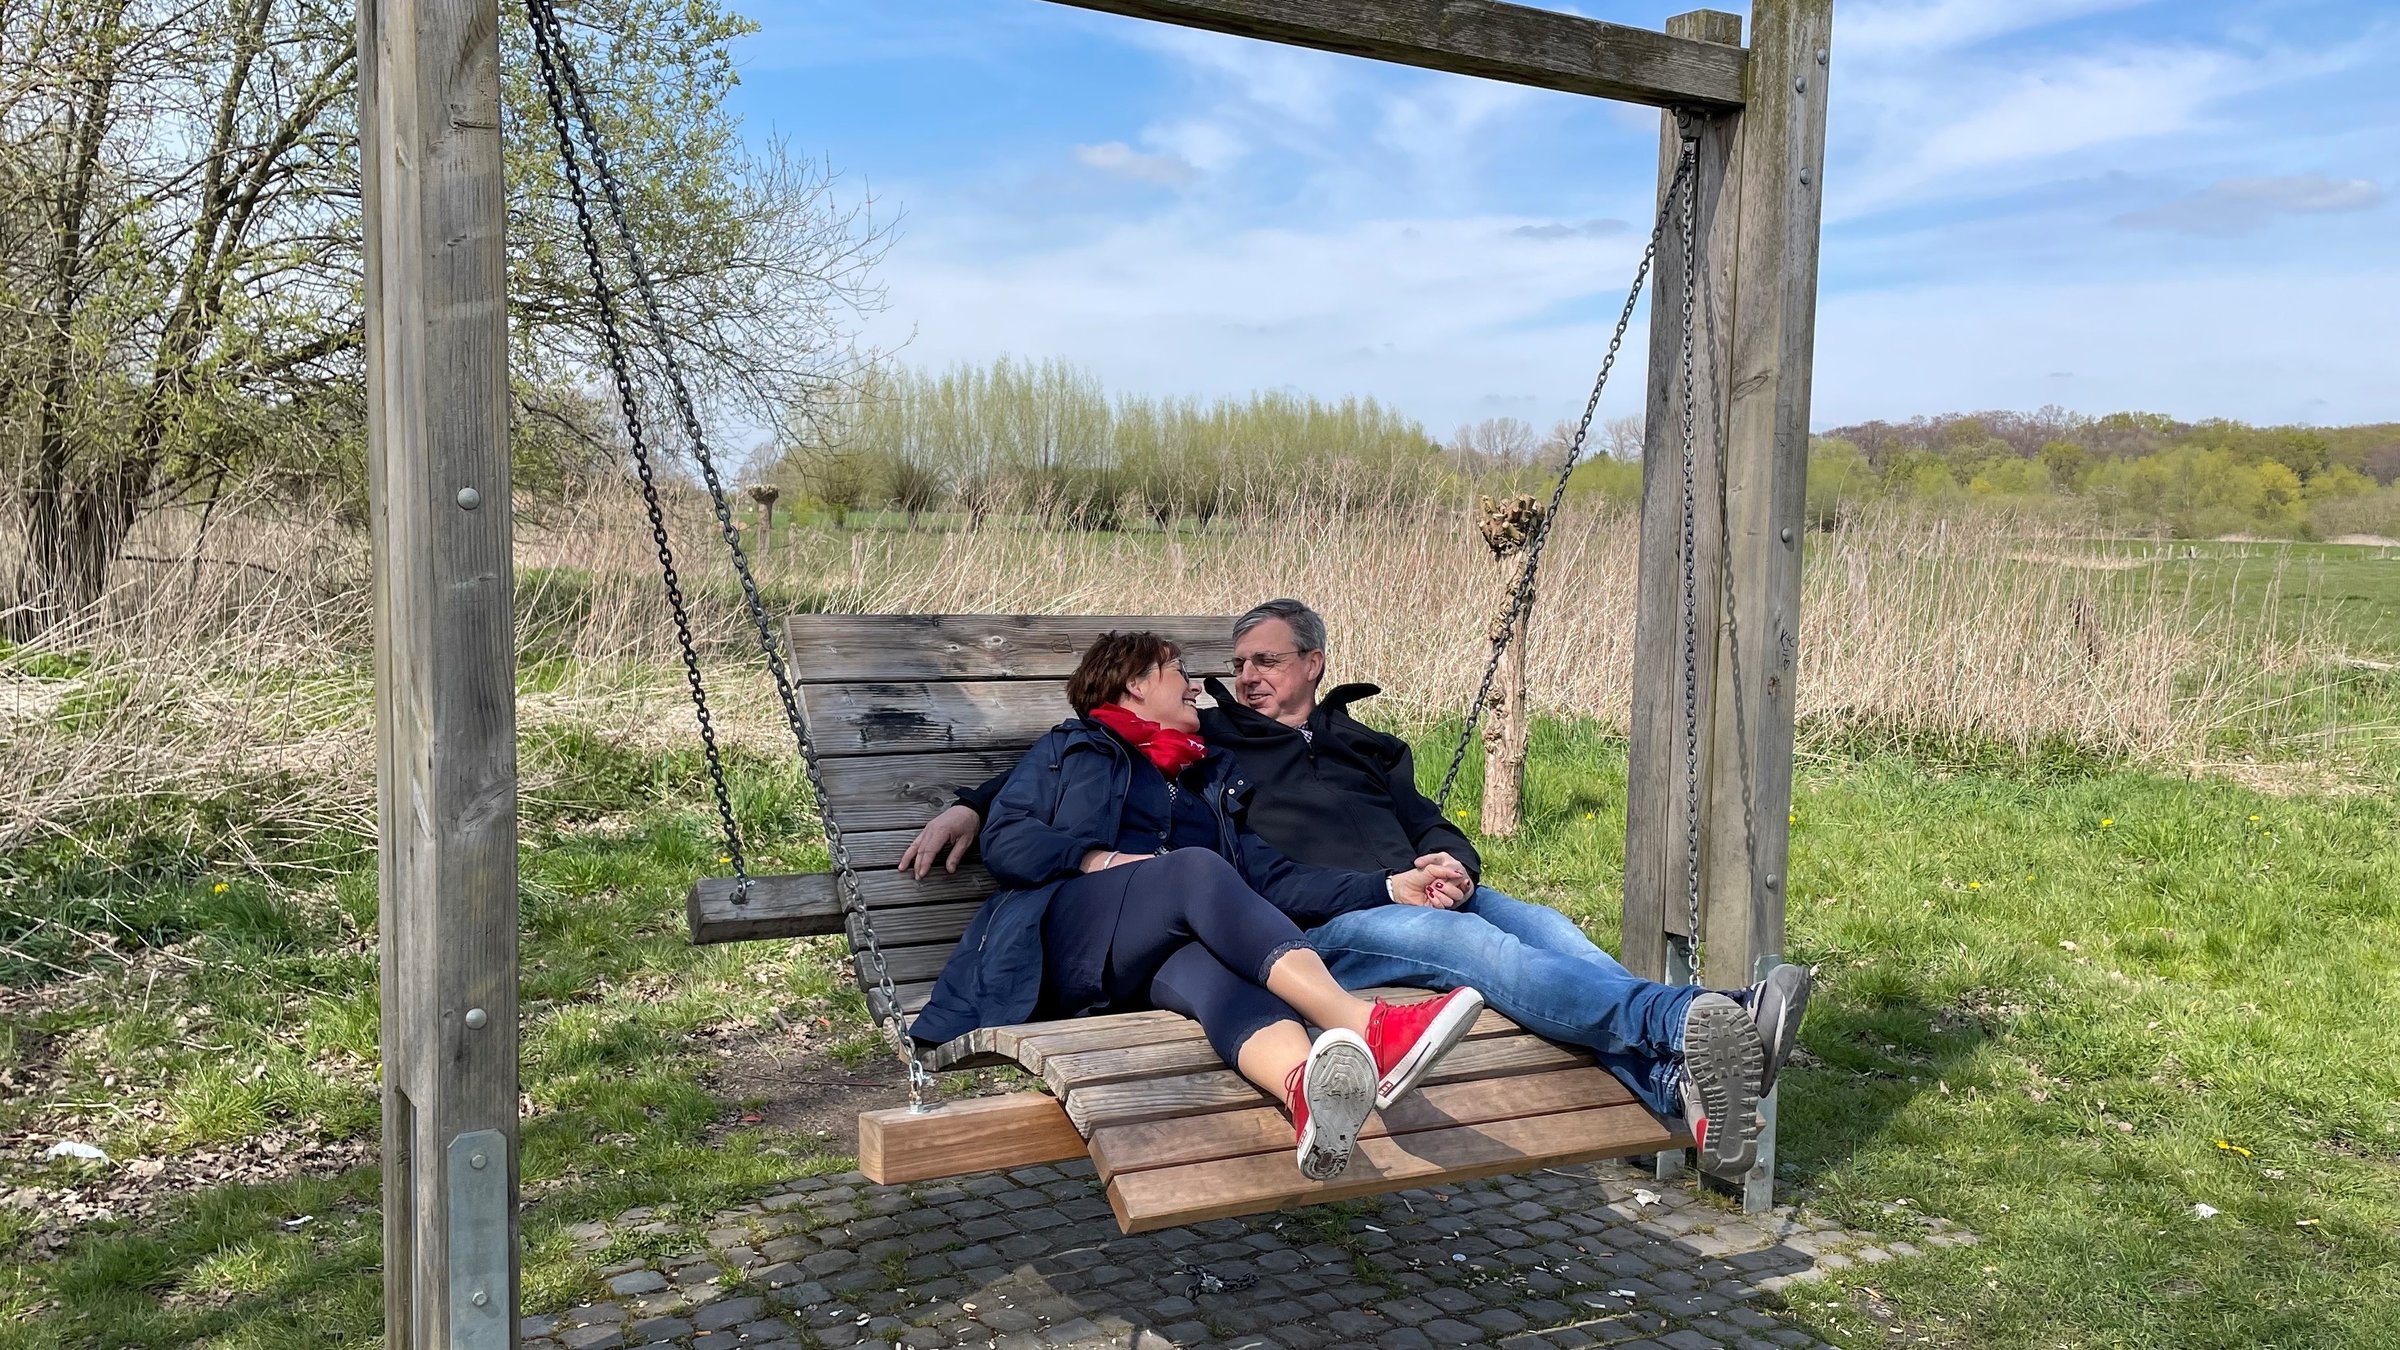 "37° Wir retten unsere Ehe": Tanja und Dirk Sorgalla sitzen nebeneinander auf einer großen, geschwungenen Holzschaukel. Im Hintergrund sieht man weitläufige Wiesen und Sträucher. Er hat den Arm um sie gelegt, sie schmiegt sich an ihn, die beiden lächeln sich an.